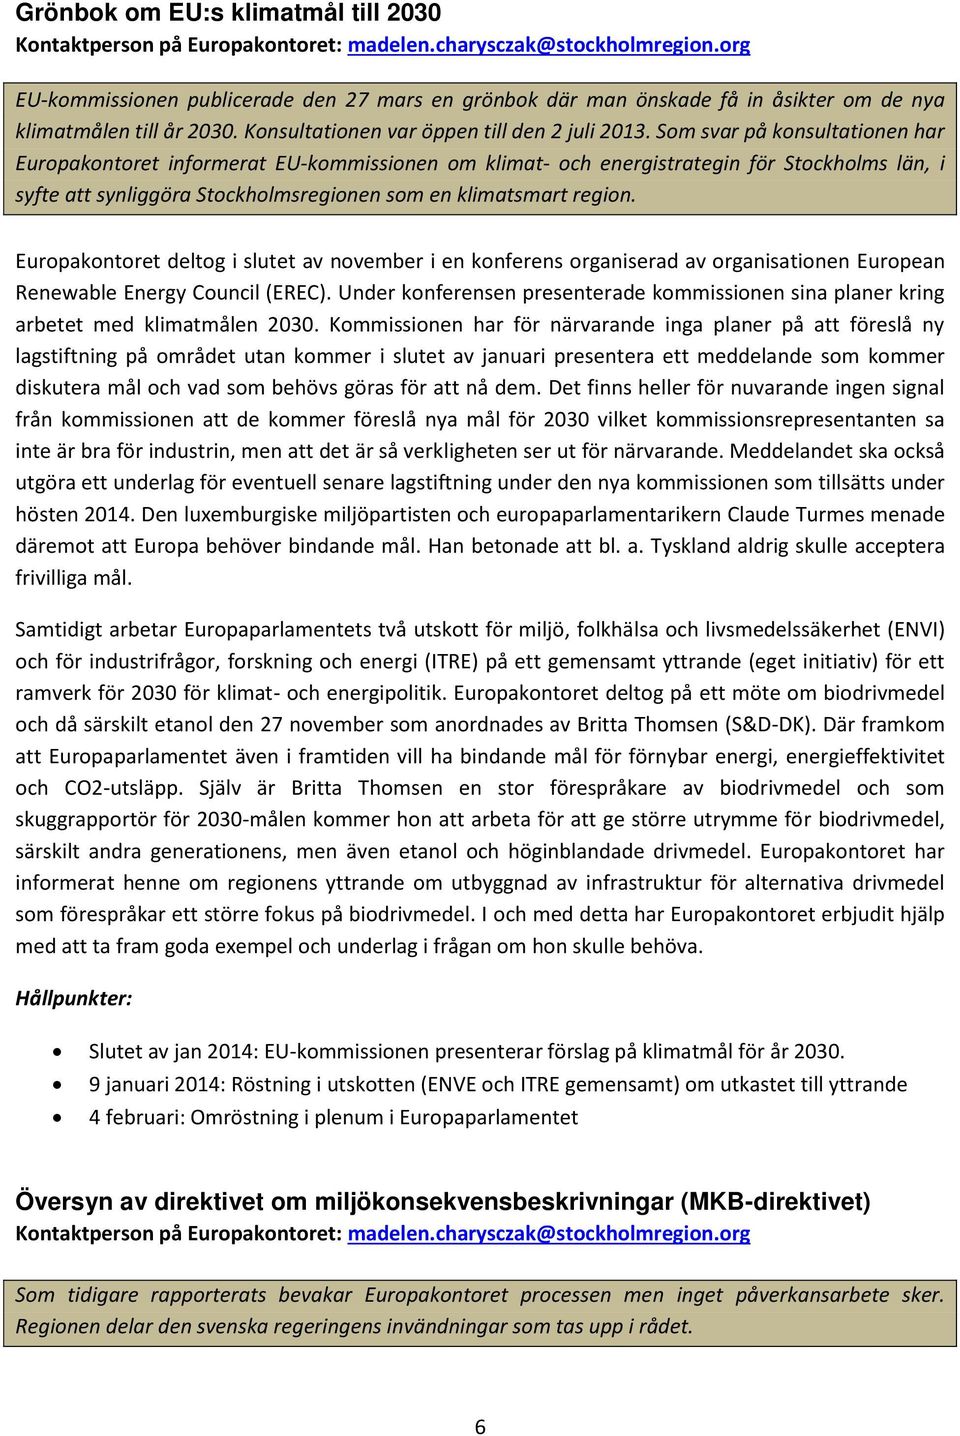 Som svar på konsultationen har Europakontoret informerat EU-kommissionen om klimat- och energistrategin för Stockholms län, i syfte att synliggöra Stockholmsregionen som en klimatsmart region.